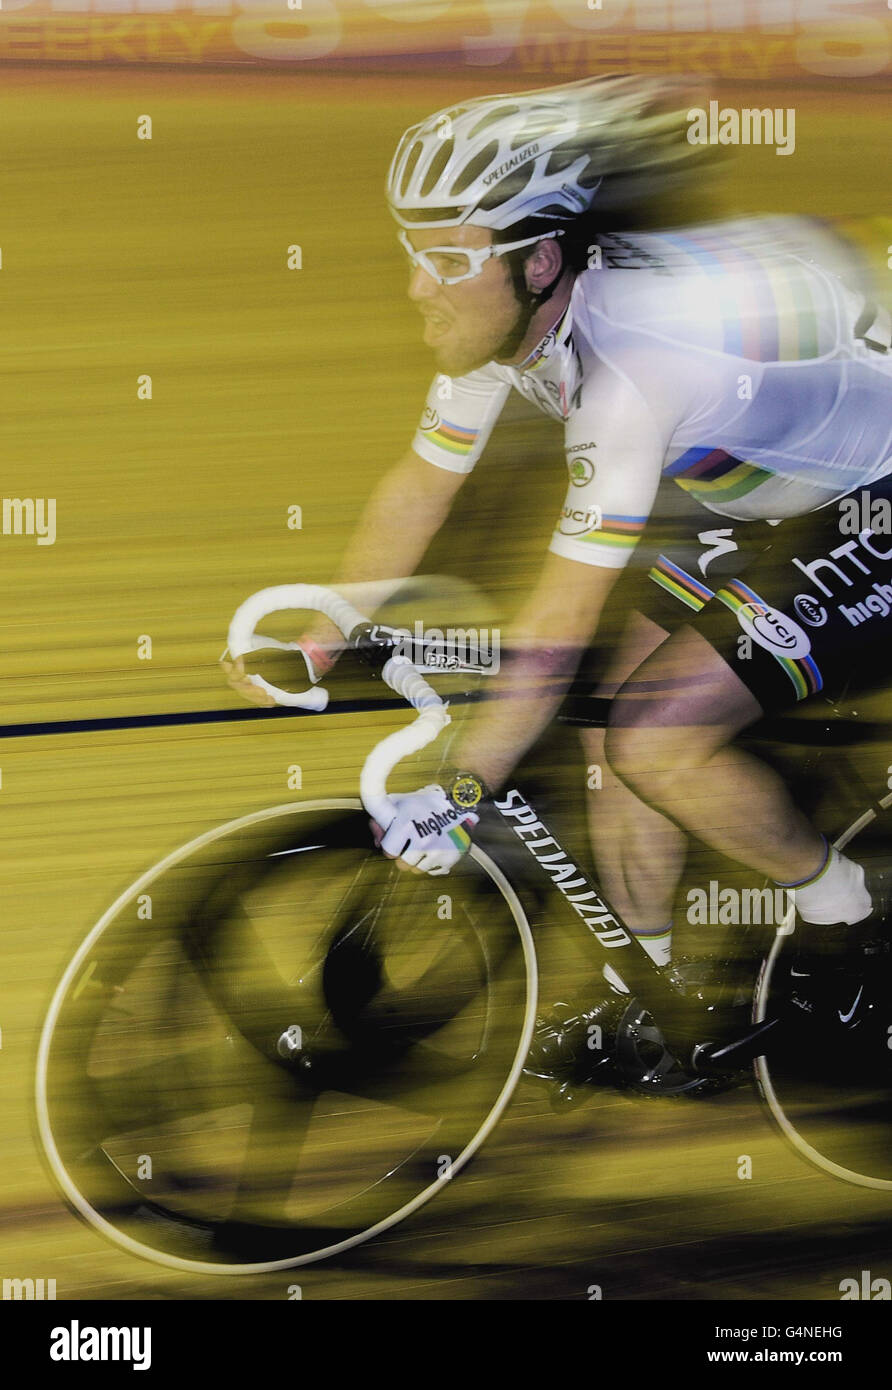 Der Weltmeister im Straßenrennen, Mark Cavendish, fährt während der  Radrevolution im Manchester Velodrome, Manchester, mit seinem Regenbogen- Trikot beim Motorradrennen Stockfotografie - Alamy